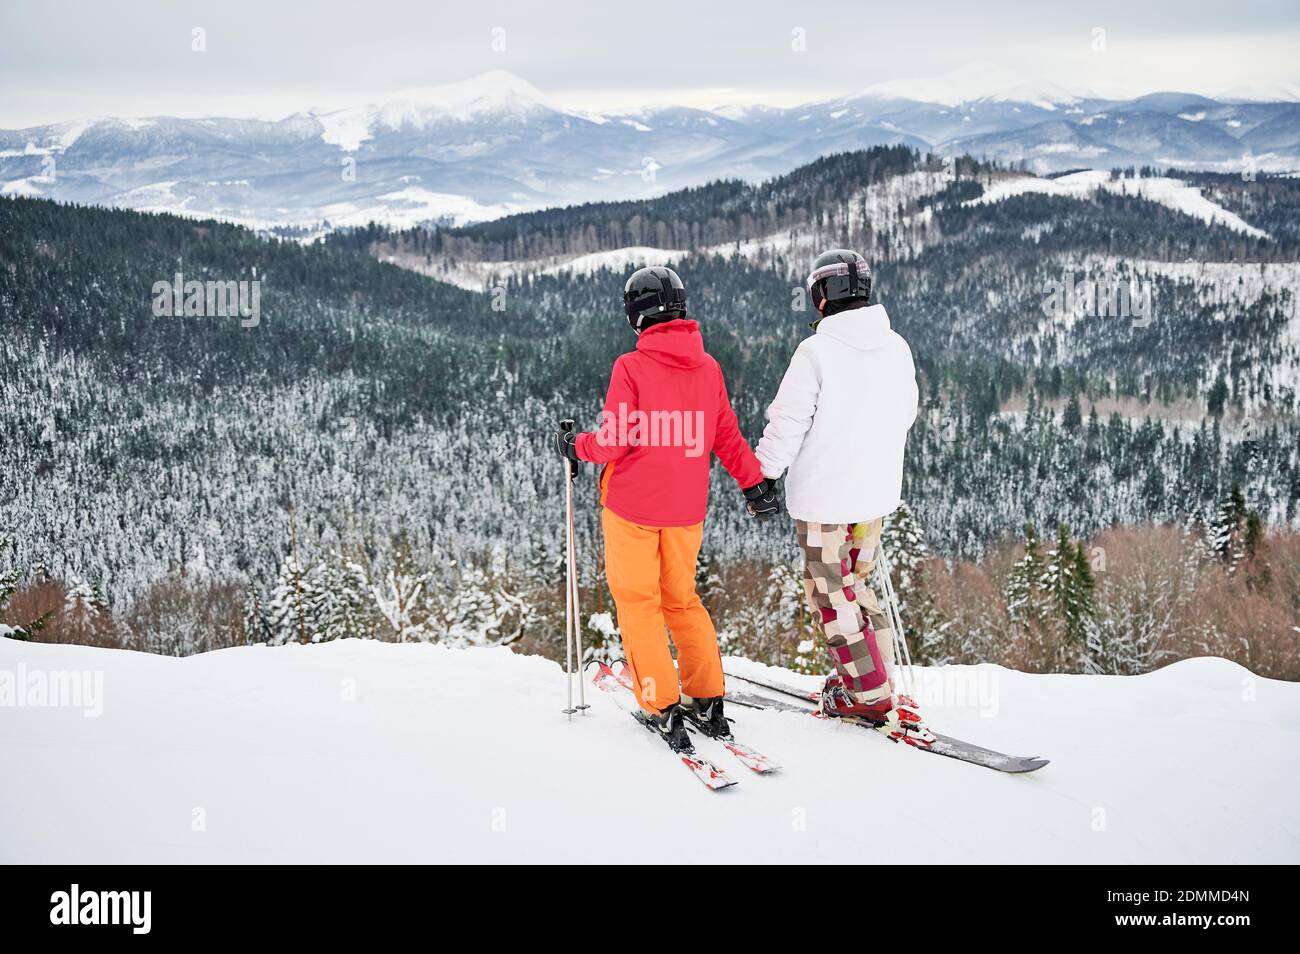 Rückansicht von zwei Skifahrern in Skianzügen und Skiausrüstung in den Winterbergen, bei schneebedecktem Wetter, Skifahren und unglaublichen Landschaften. Konzept der Wintersport-Aktivitäten, Beziehungen. Stockfoto